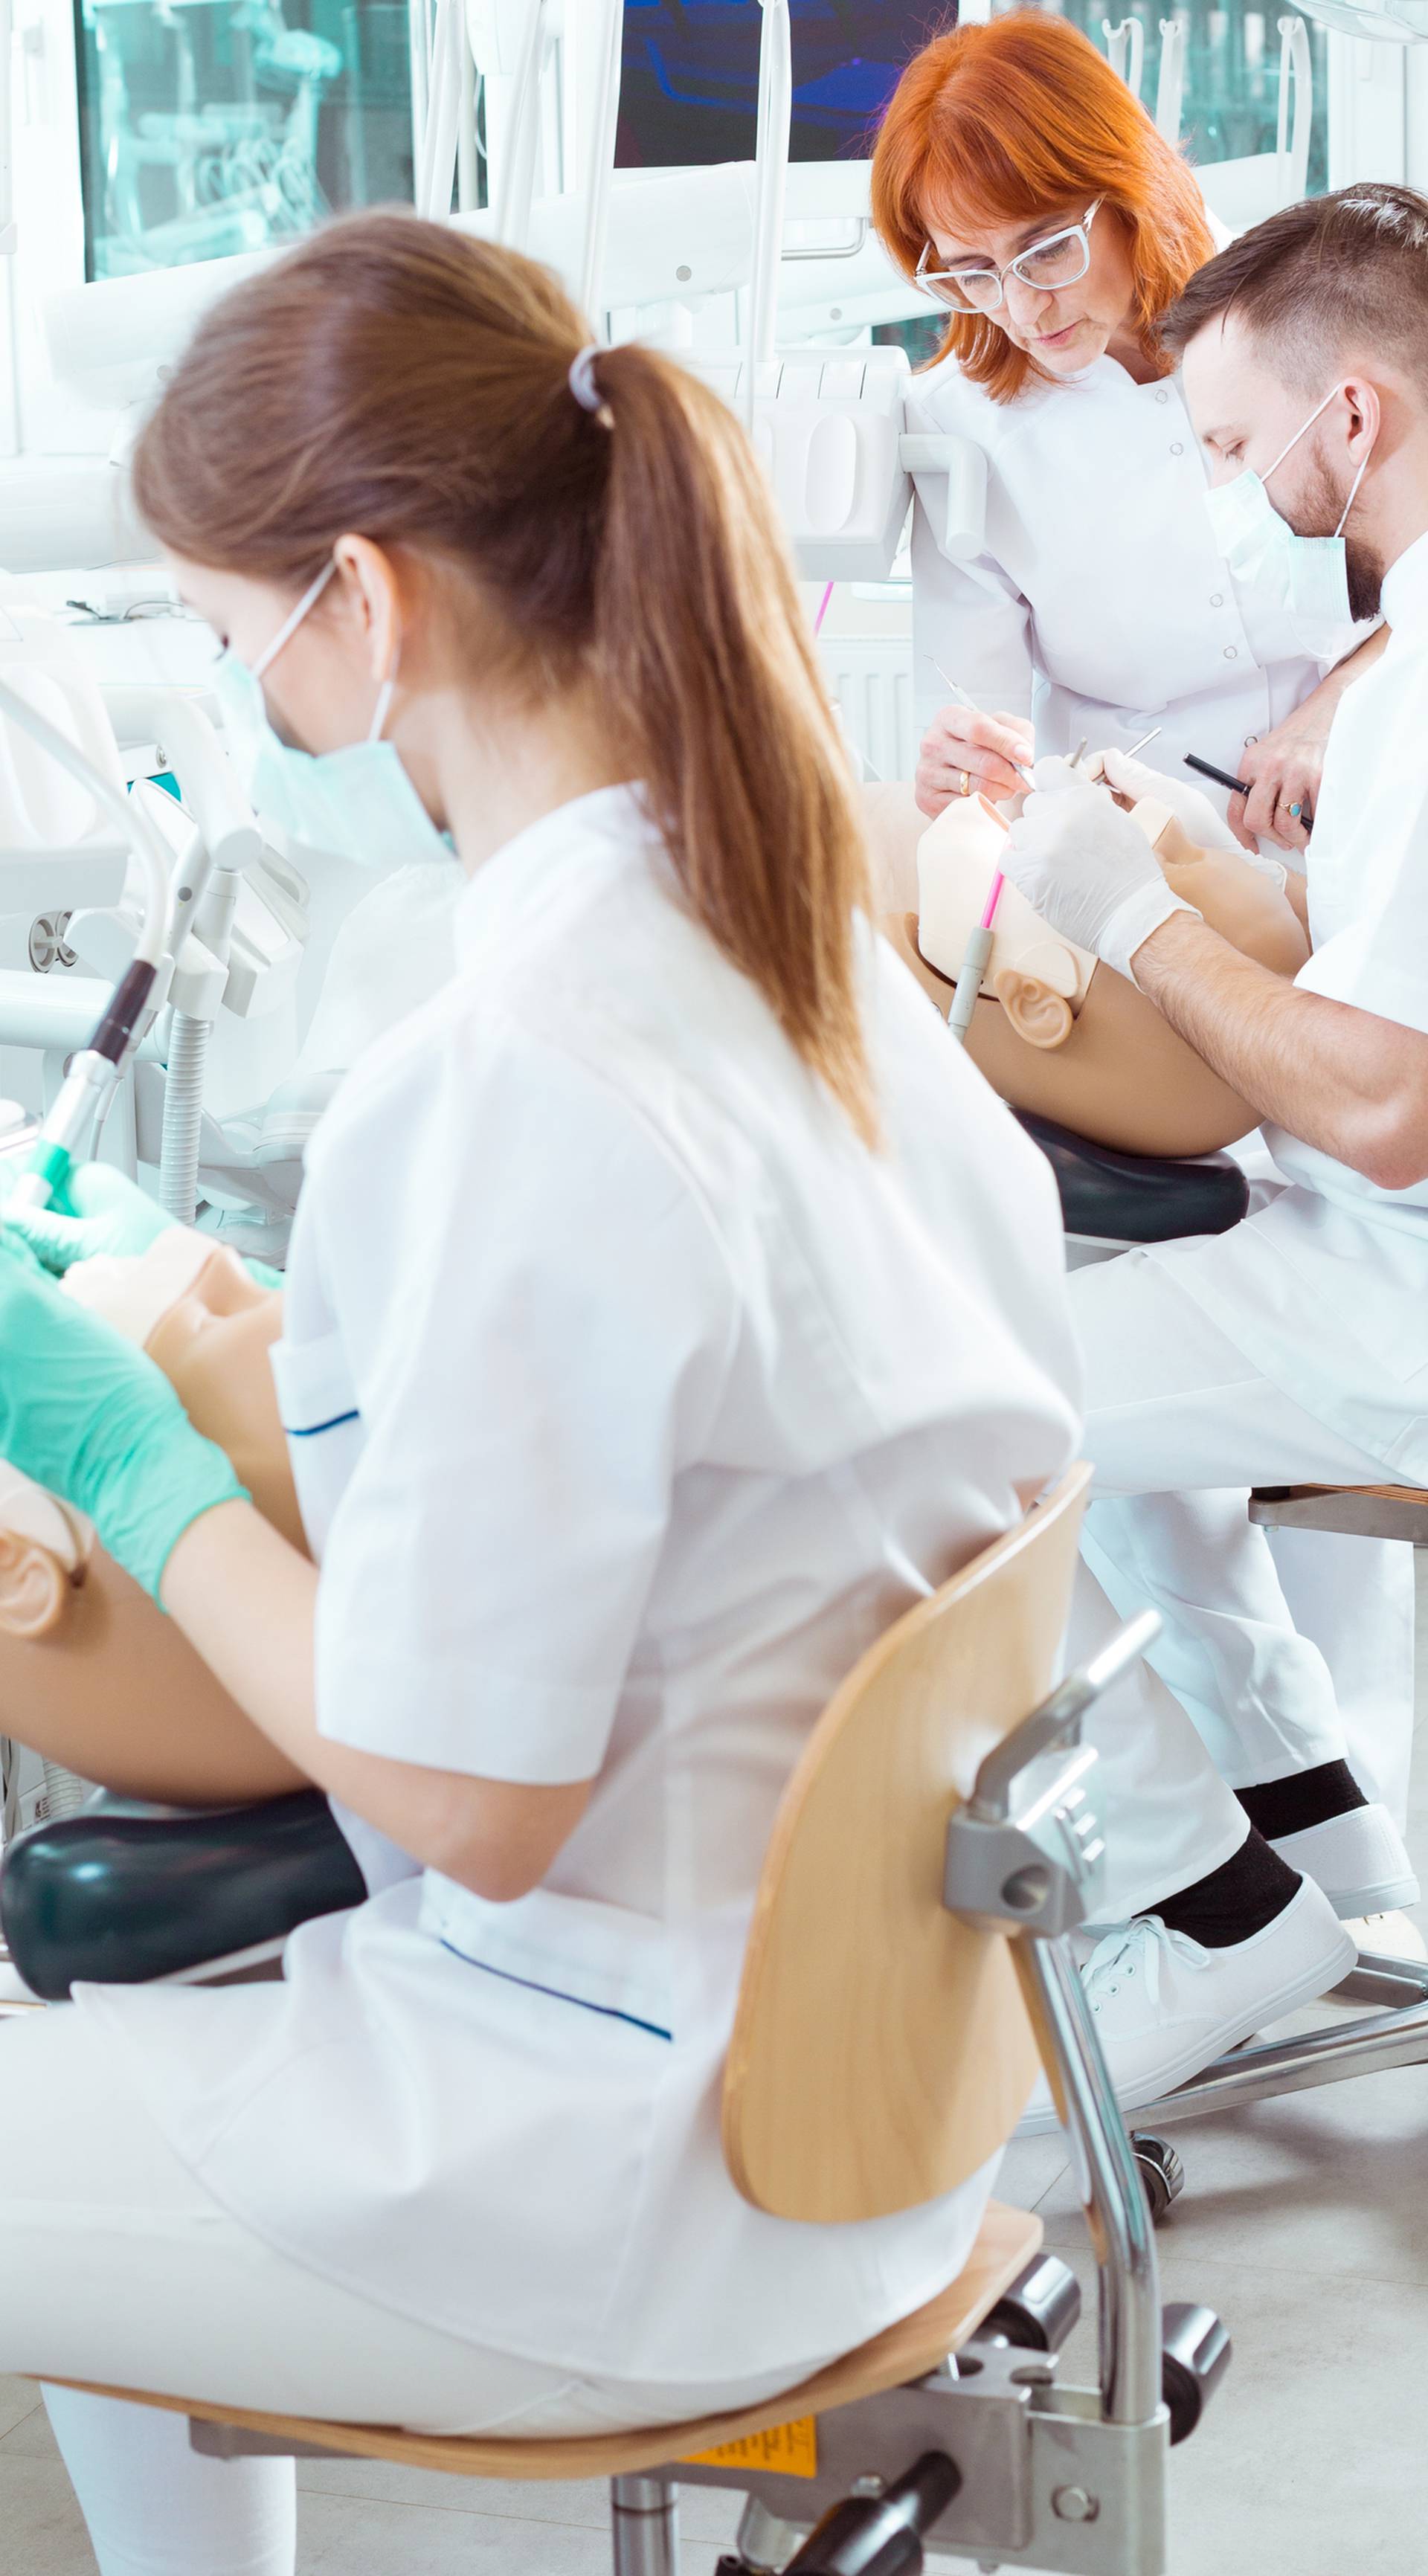 Slavonci plaćaju 420.000 kuna da bi studirali stomatologiju